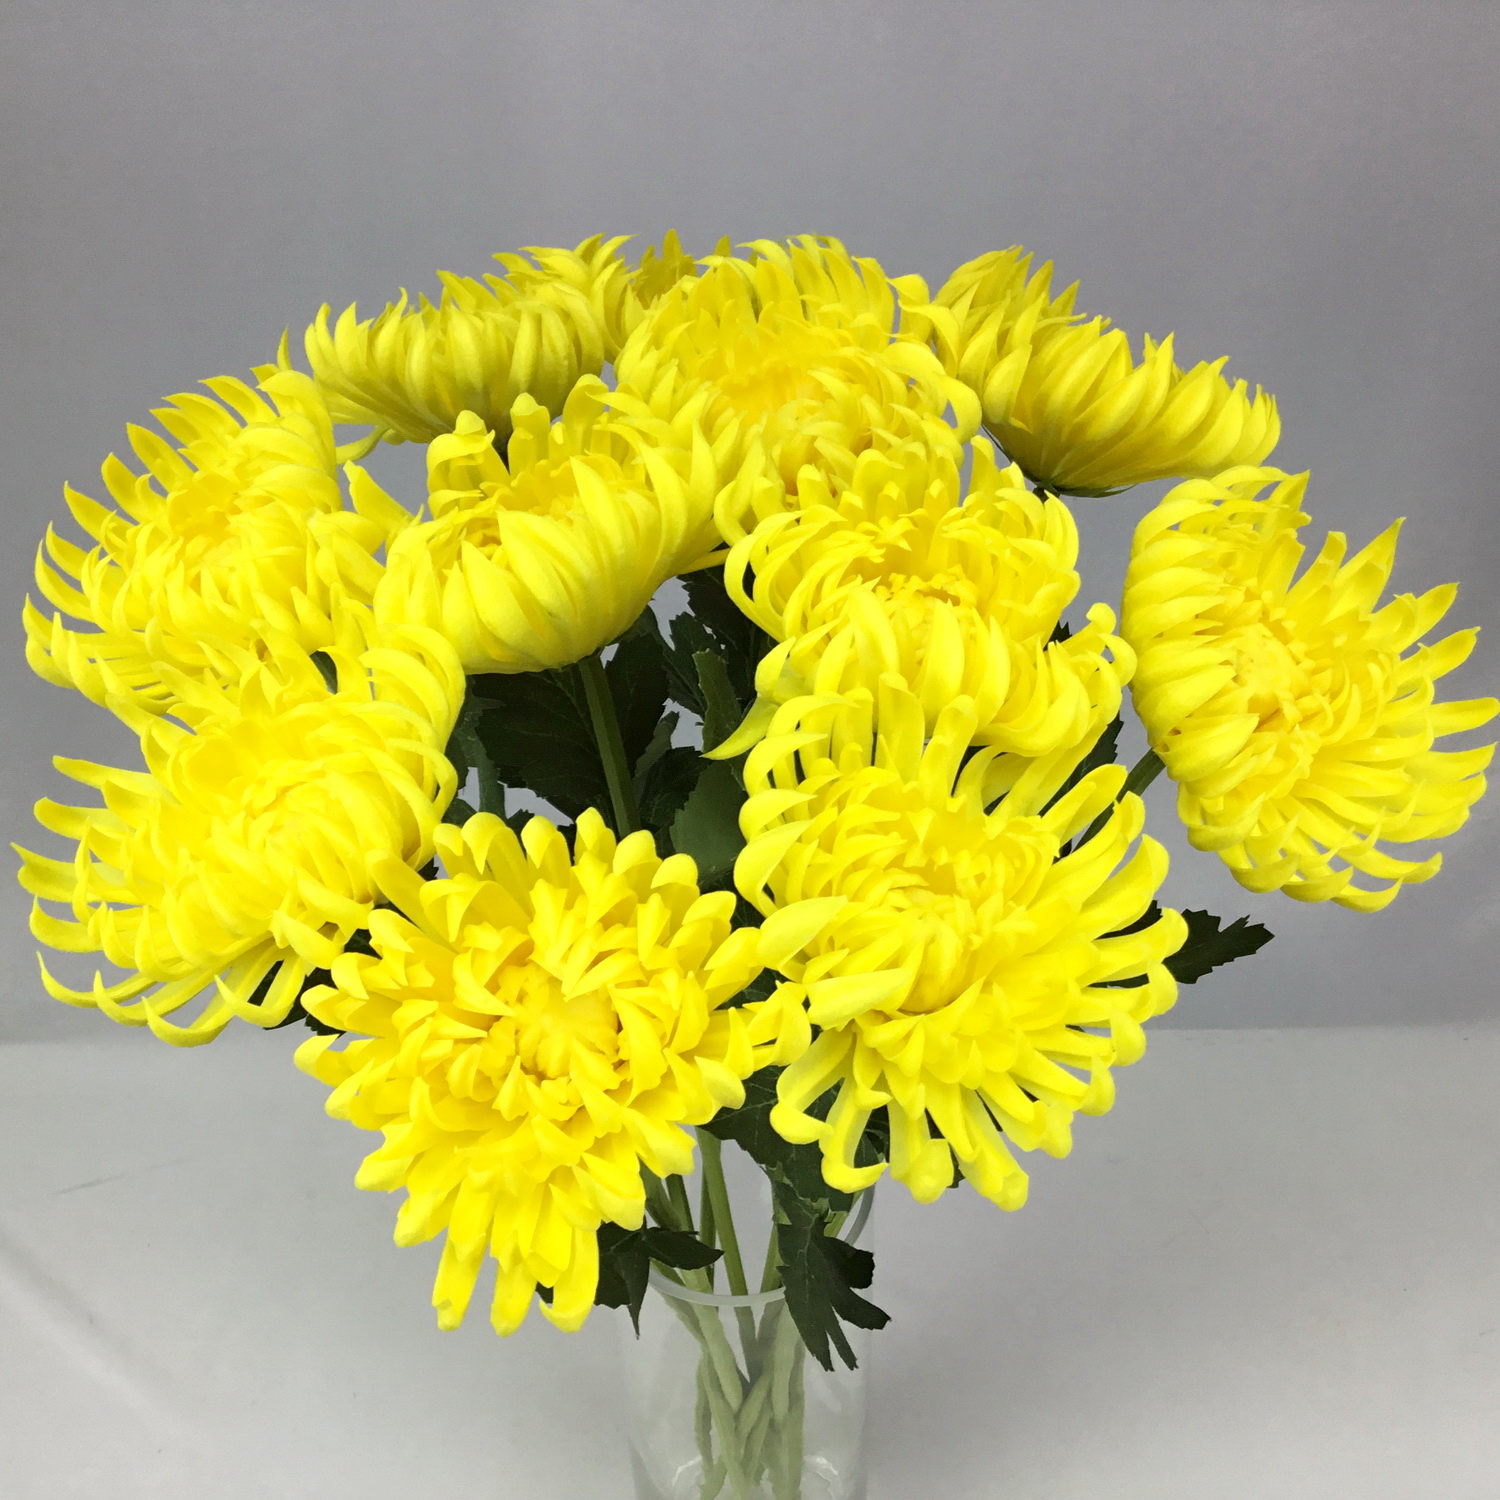 ดอกไม้ประดิษฐ์สีเหลือง ดอกไม้ประดับตกแต่ง